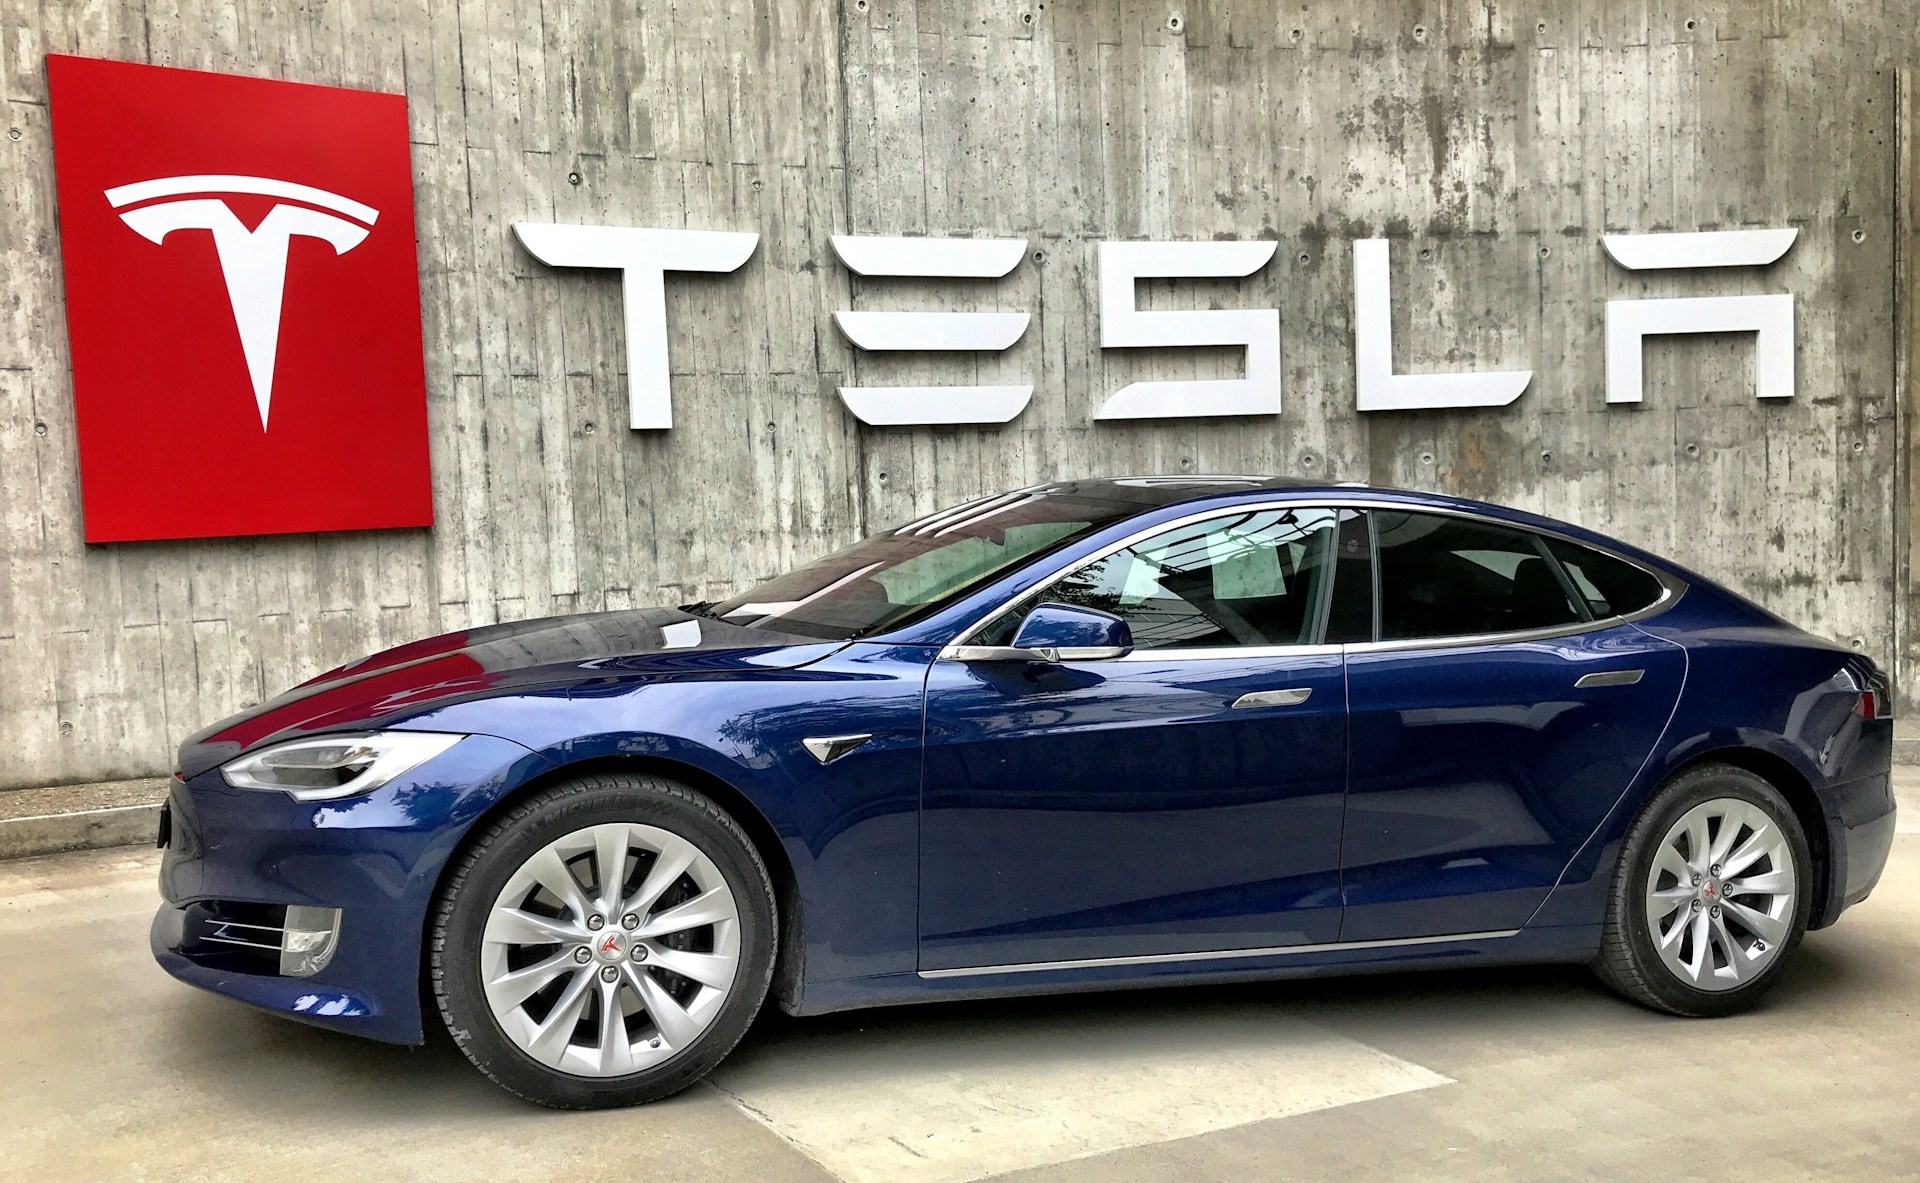 Tesla retrasaría hasta octubre la presentación de su robotaxi autónomo, reportan